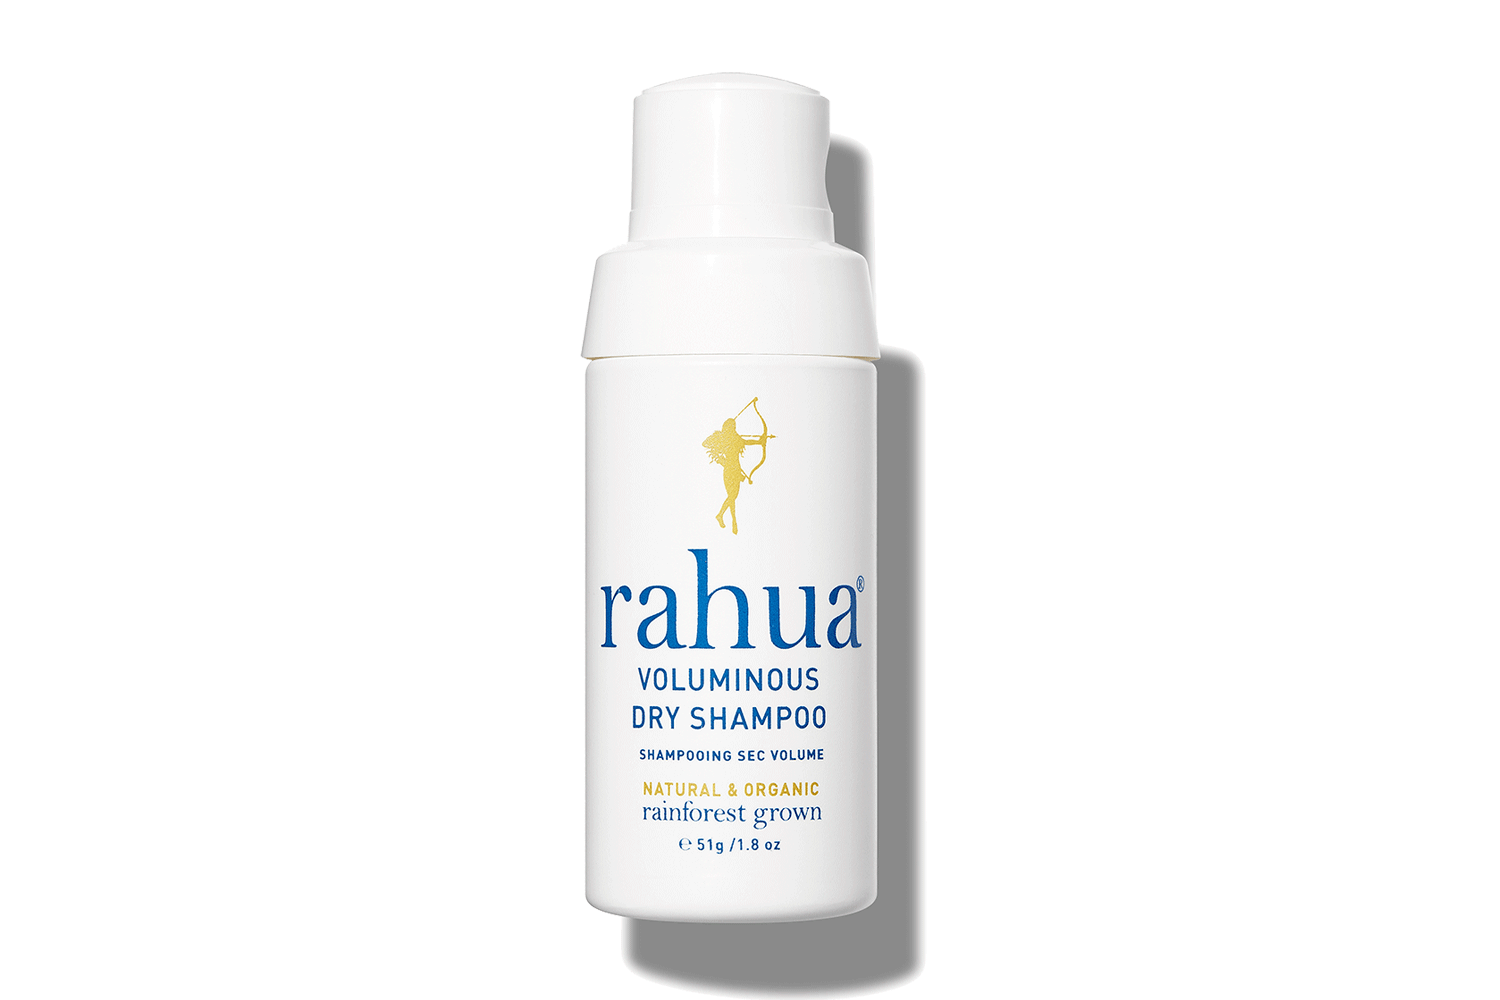 rahua-voluminous-dry-shampoo-words-on-beauty